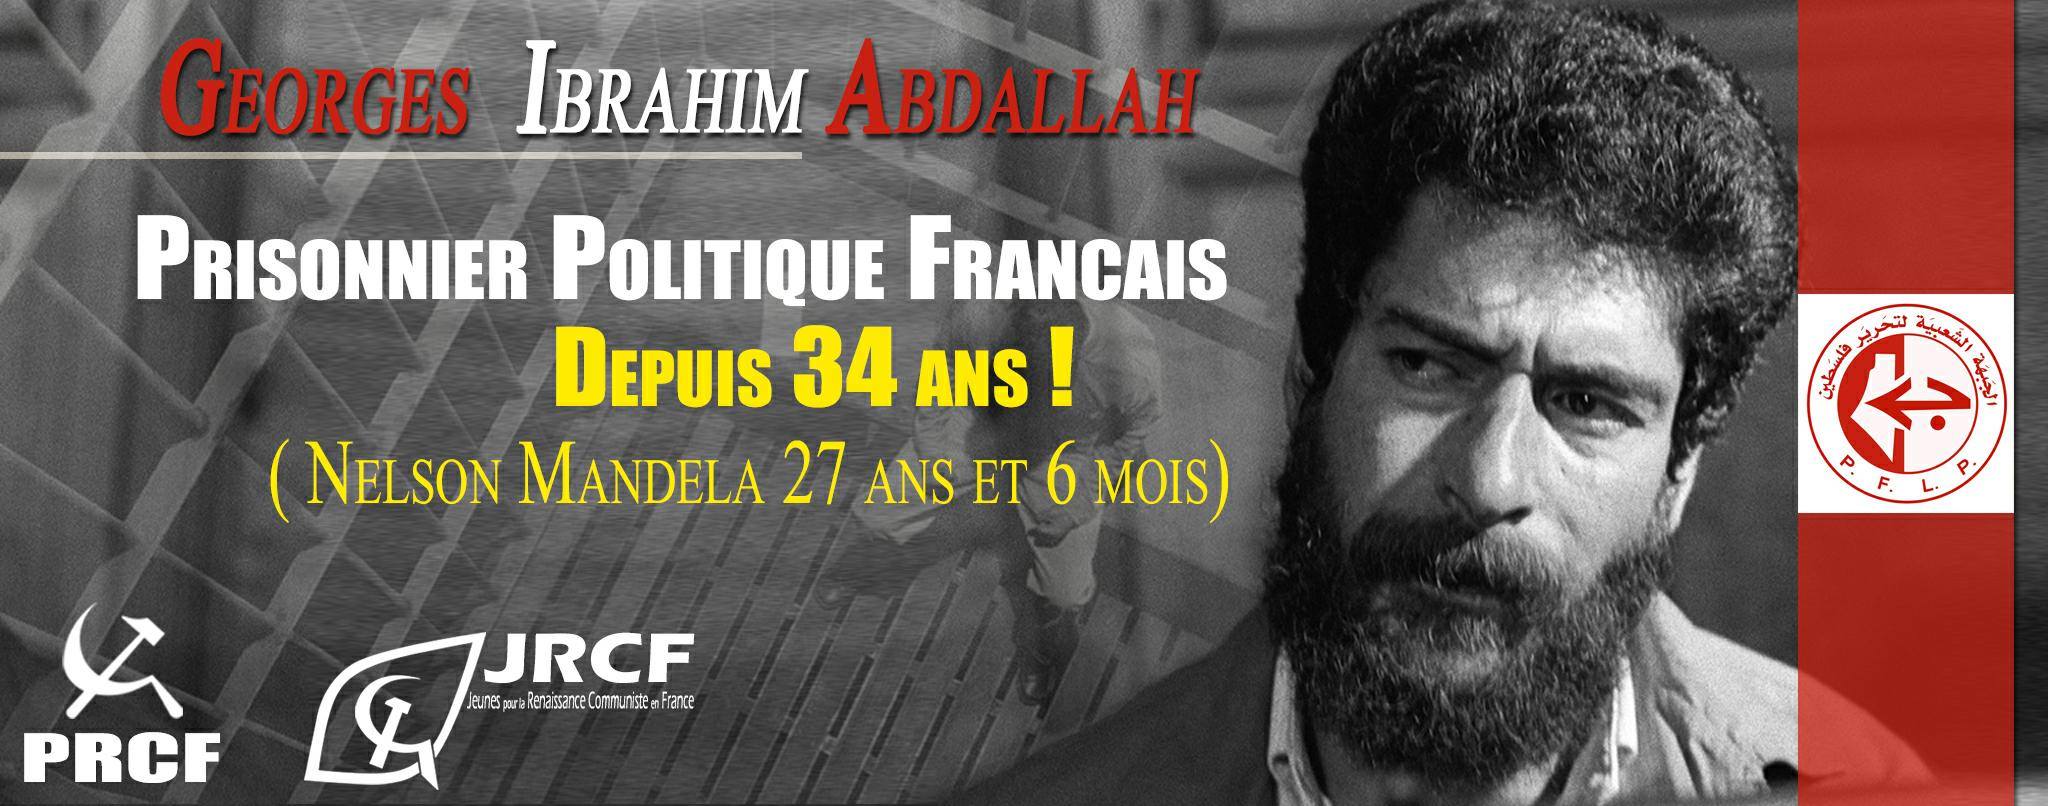 En vidéo, l’appel à la libération de Georges Ibrahim Abdallah !